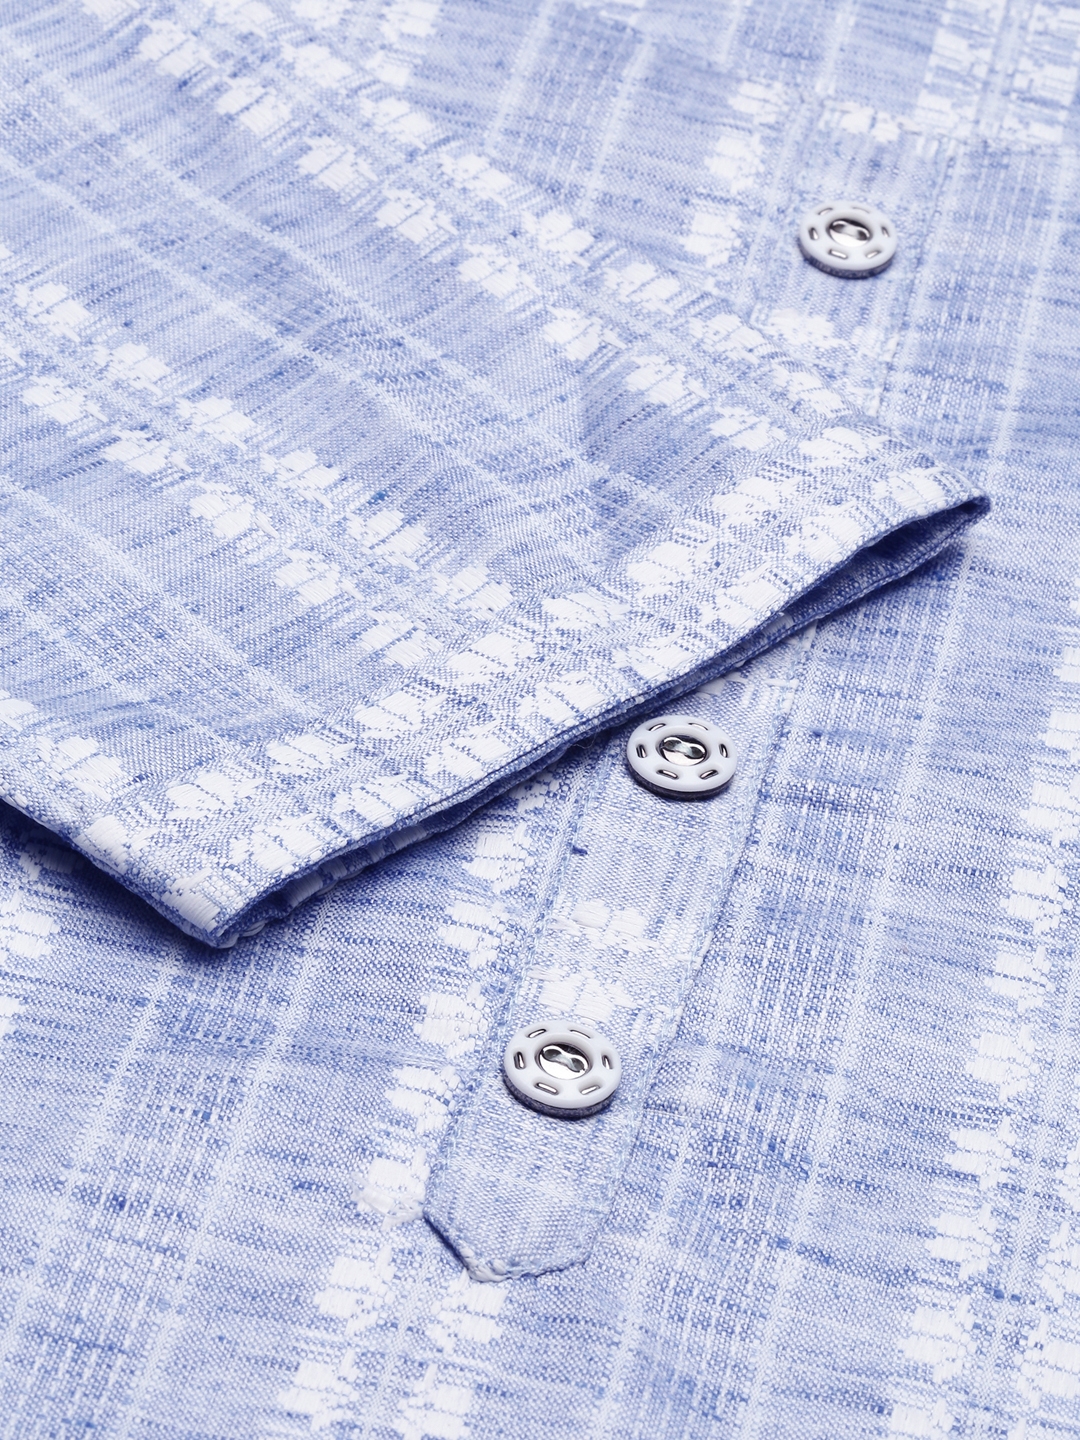 Women's Blue Cotton Solid Comfort Fit Kurtas